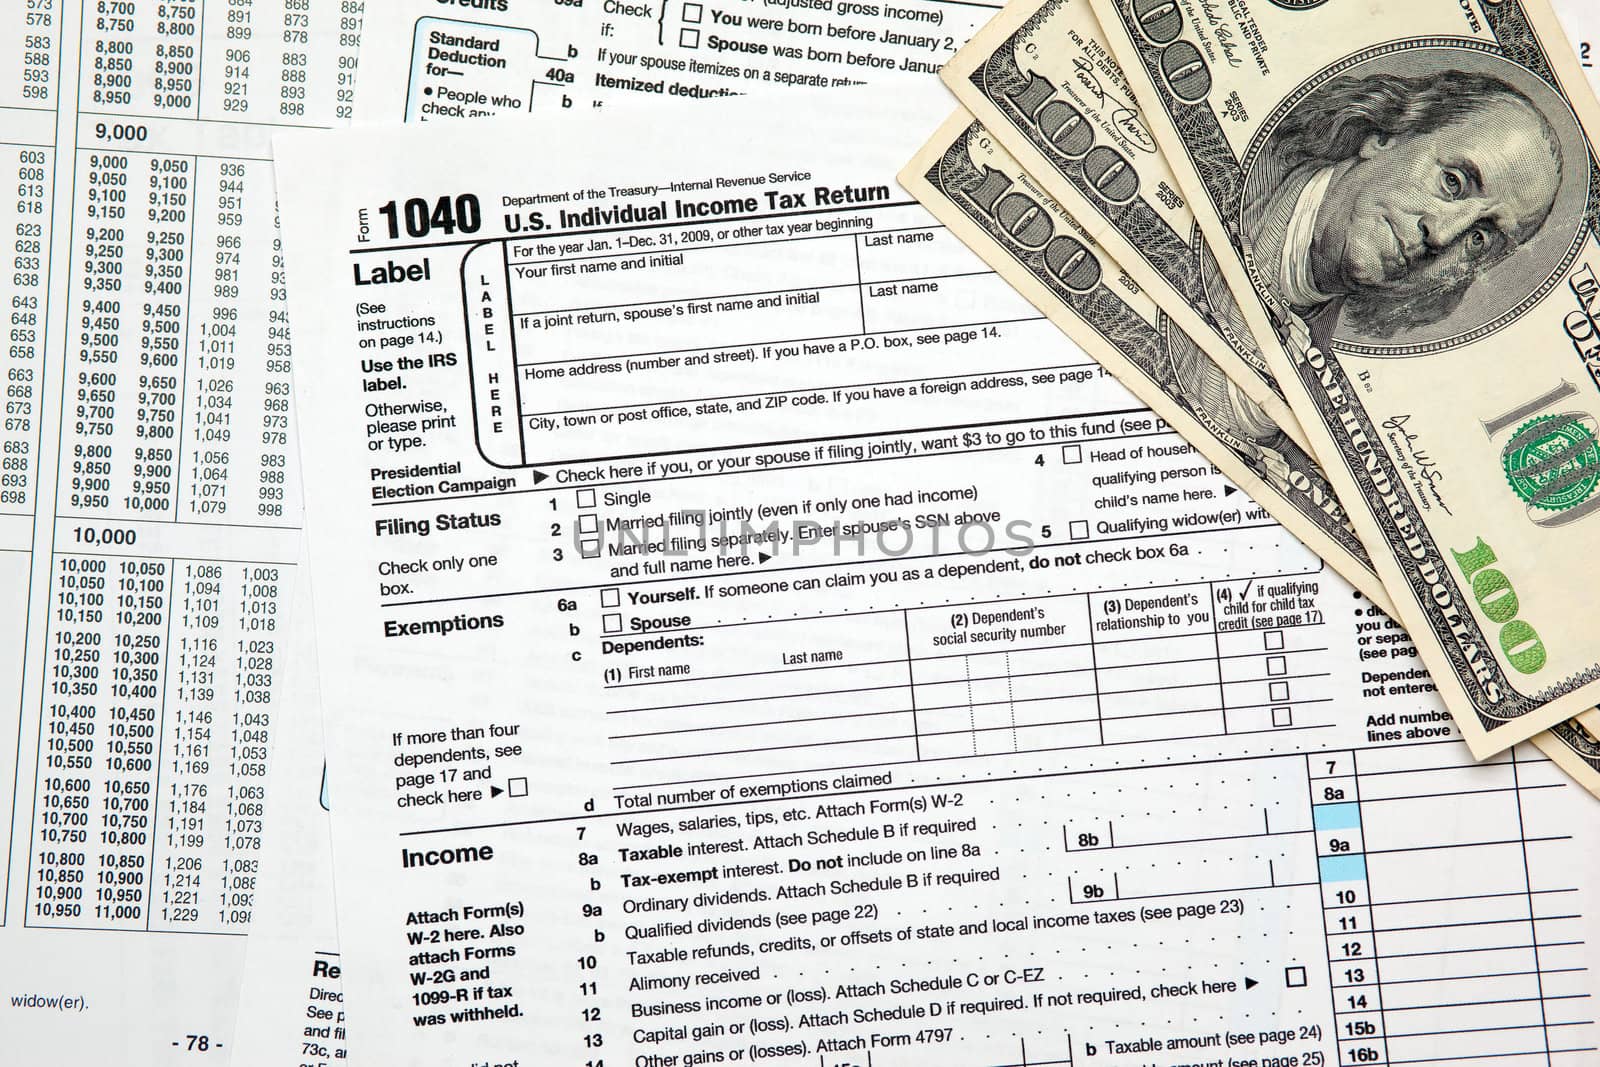 Tax time - Closeup of U.S. 1040 tax return with $100 bills